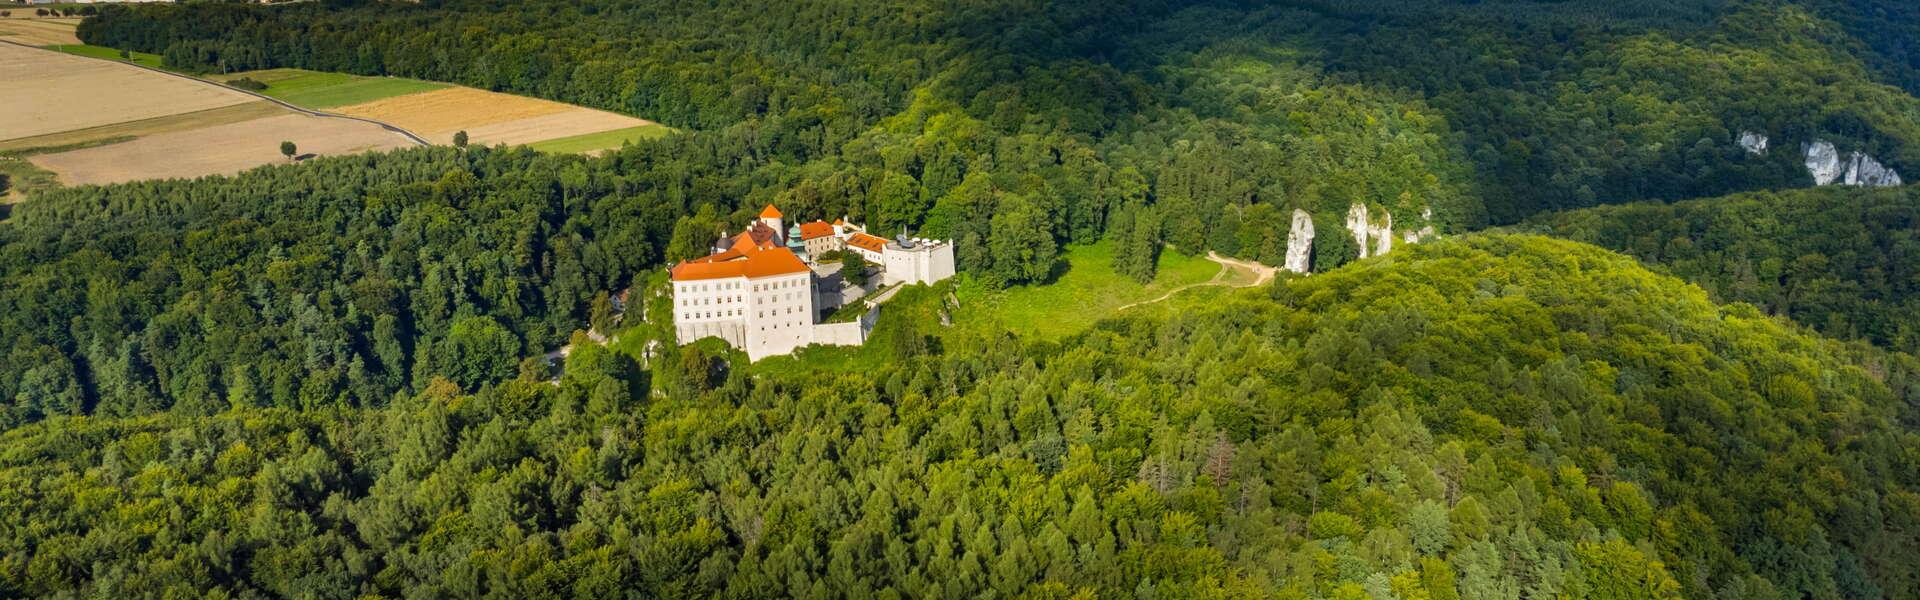 Prądnik-Tal im Nationalpark Ojców. Im Hintergrund das Schloss in Pieskowa Skała, Häuser in der Ferne.